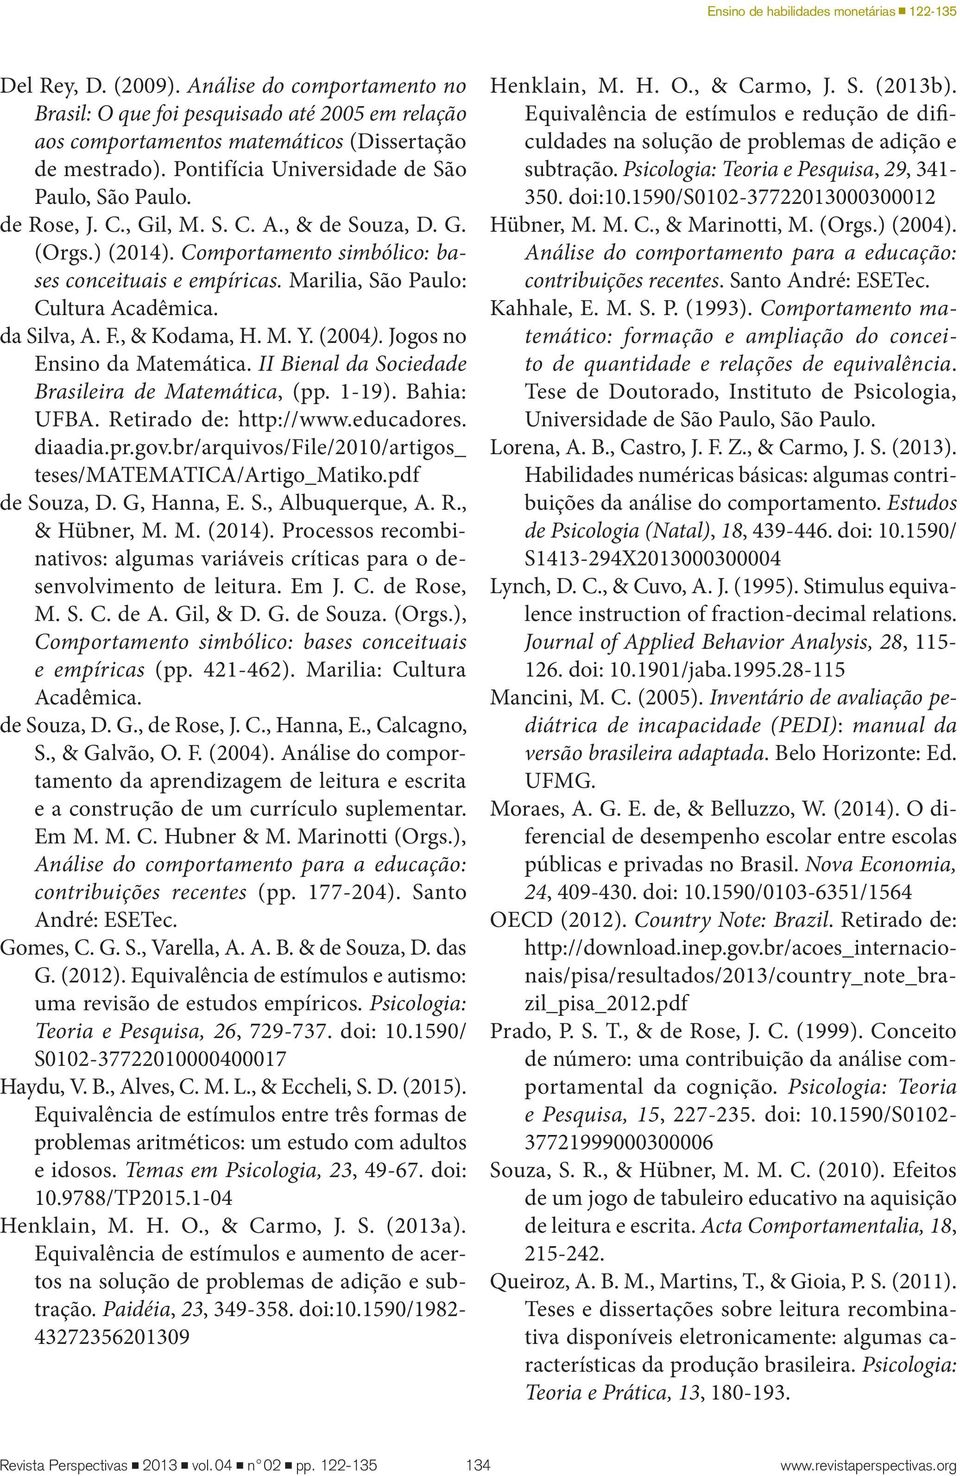 Marilia, São Paulo: Cultura Acadêmica. da Silva, A. F., & Kodama, H. M. Y. (2004). Jogos no Ensino da Matemática. II Bienal da Sociedade Brasileira de Matemática, (pp. 1-19). Bahia: UFBA.